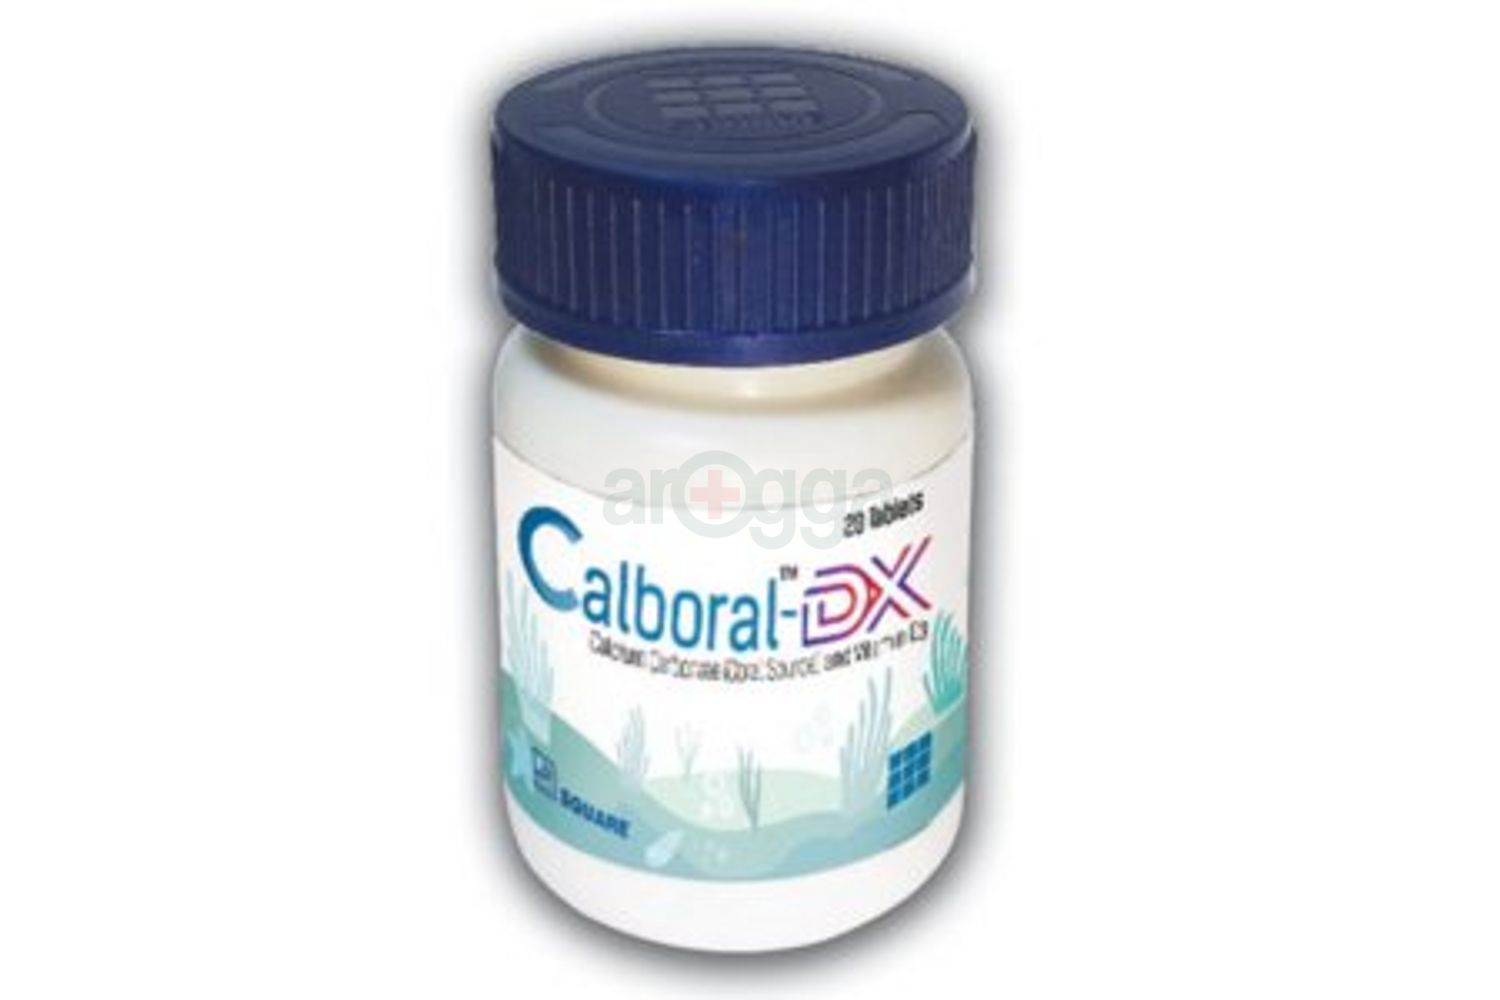 Calboral-DX